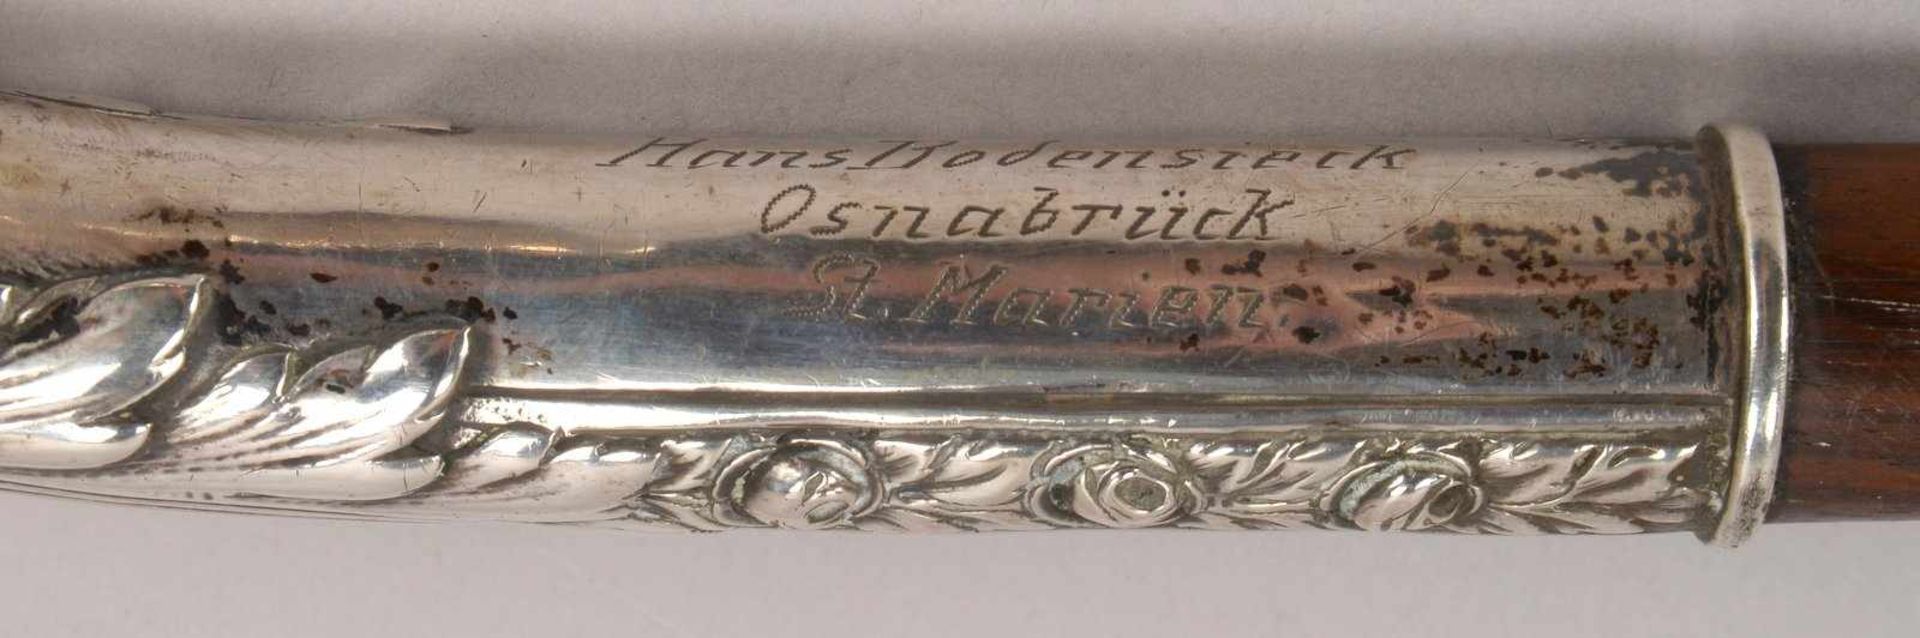 Gehstock, mit gebogenem Griff, Griff 800 Silber, floral reliefiert und graviert; Länge 80,2 cm - Bild 2 aus 3